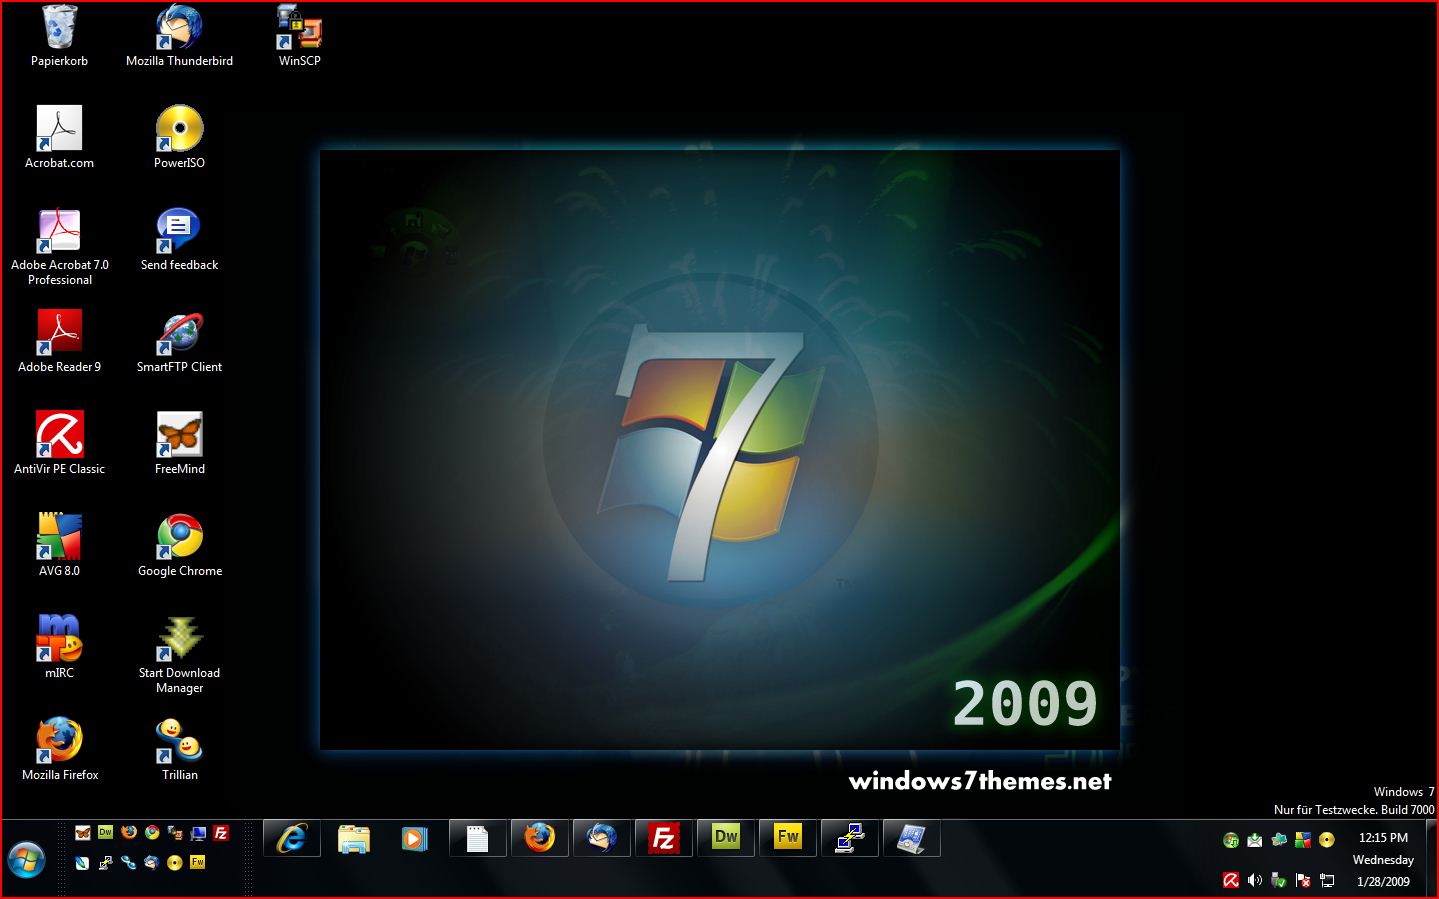 Bạn muốn trang trí cho màn hình máy tính Windows 7 của mình một cách độc đáo và đẹp mắt? Hãy tải về chủ đề nền máy tính Windows 7 miễn phí [1439x899] được cung cấp trong hình ảnh liên quan. Điều này sẽ giúp bạn tạo ra một màn hình máy tính thú vị và mang tính cá nhân hóa cao.